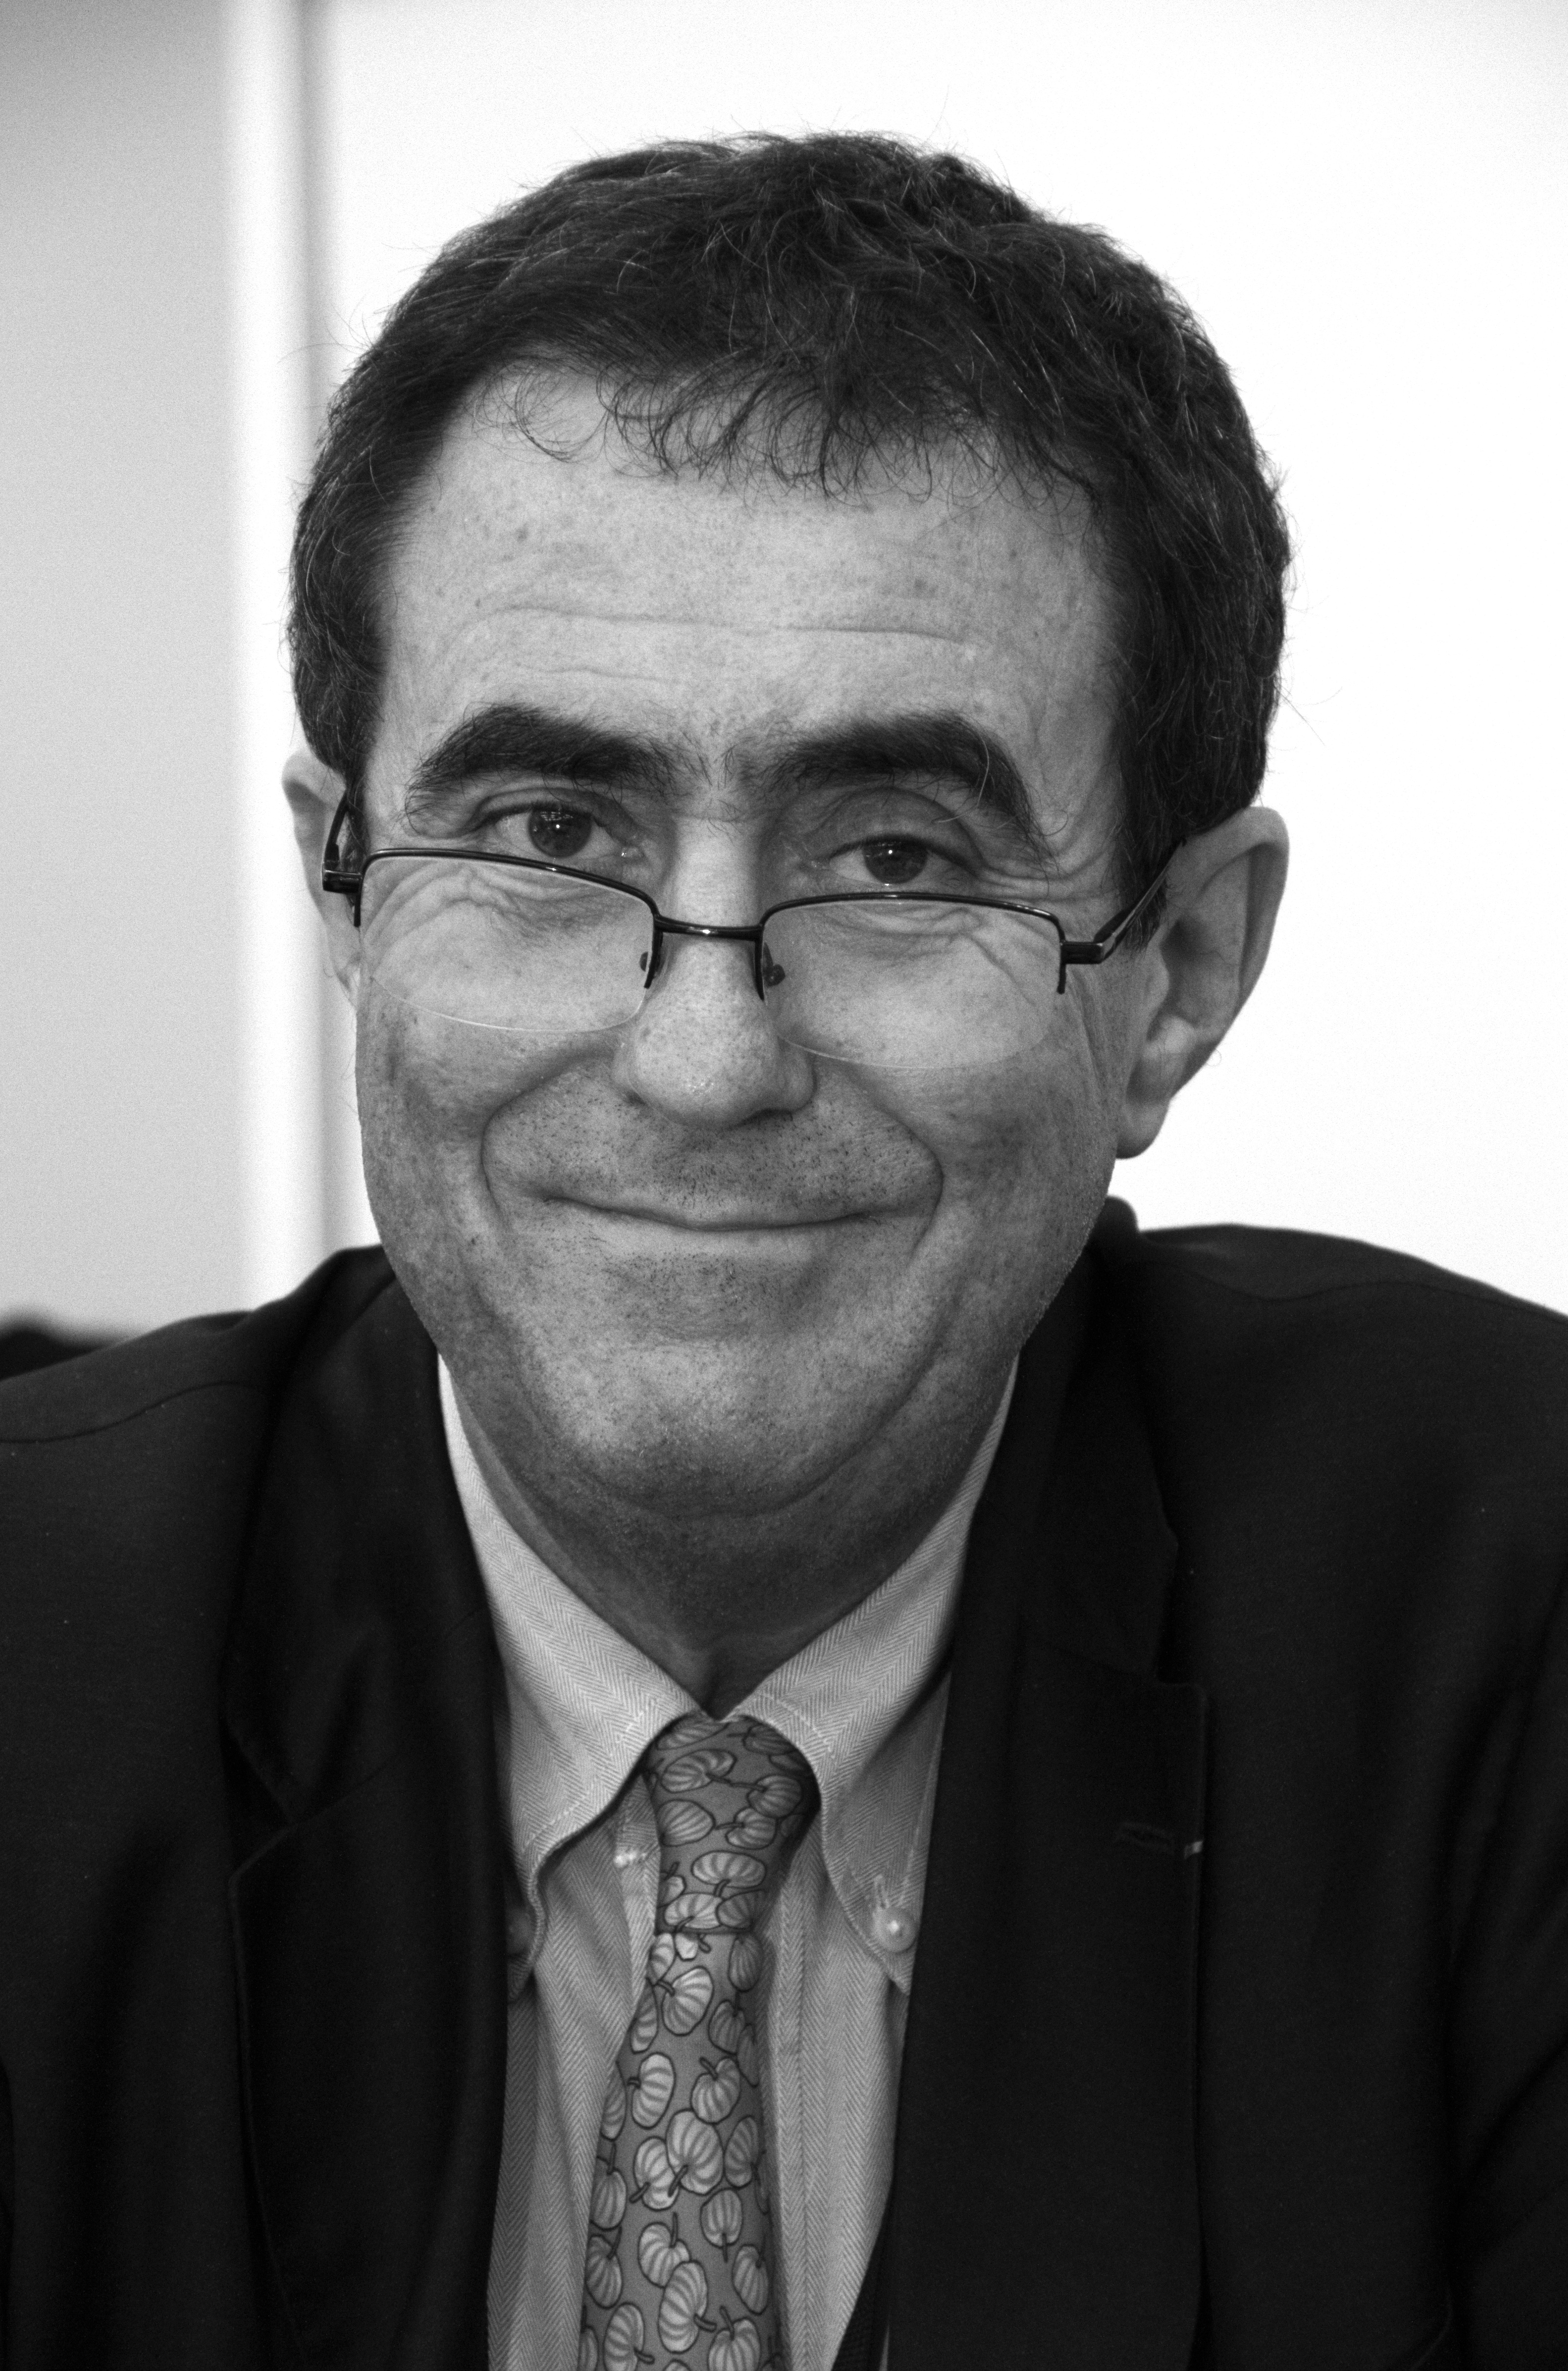 Juan Pierre - Wikipedia